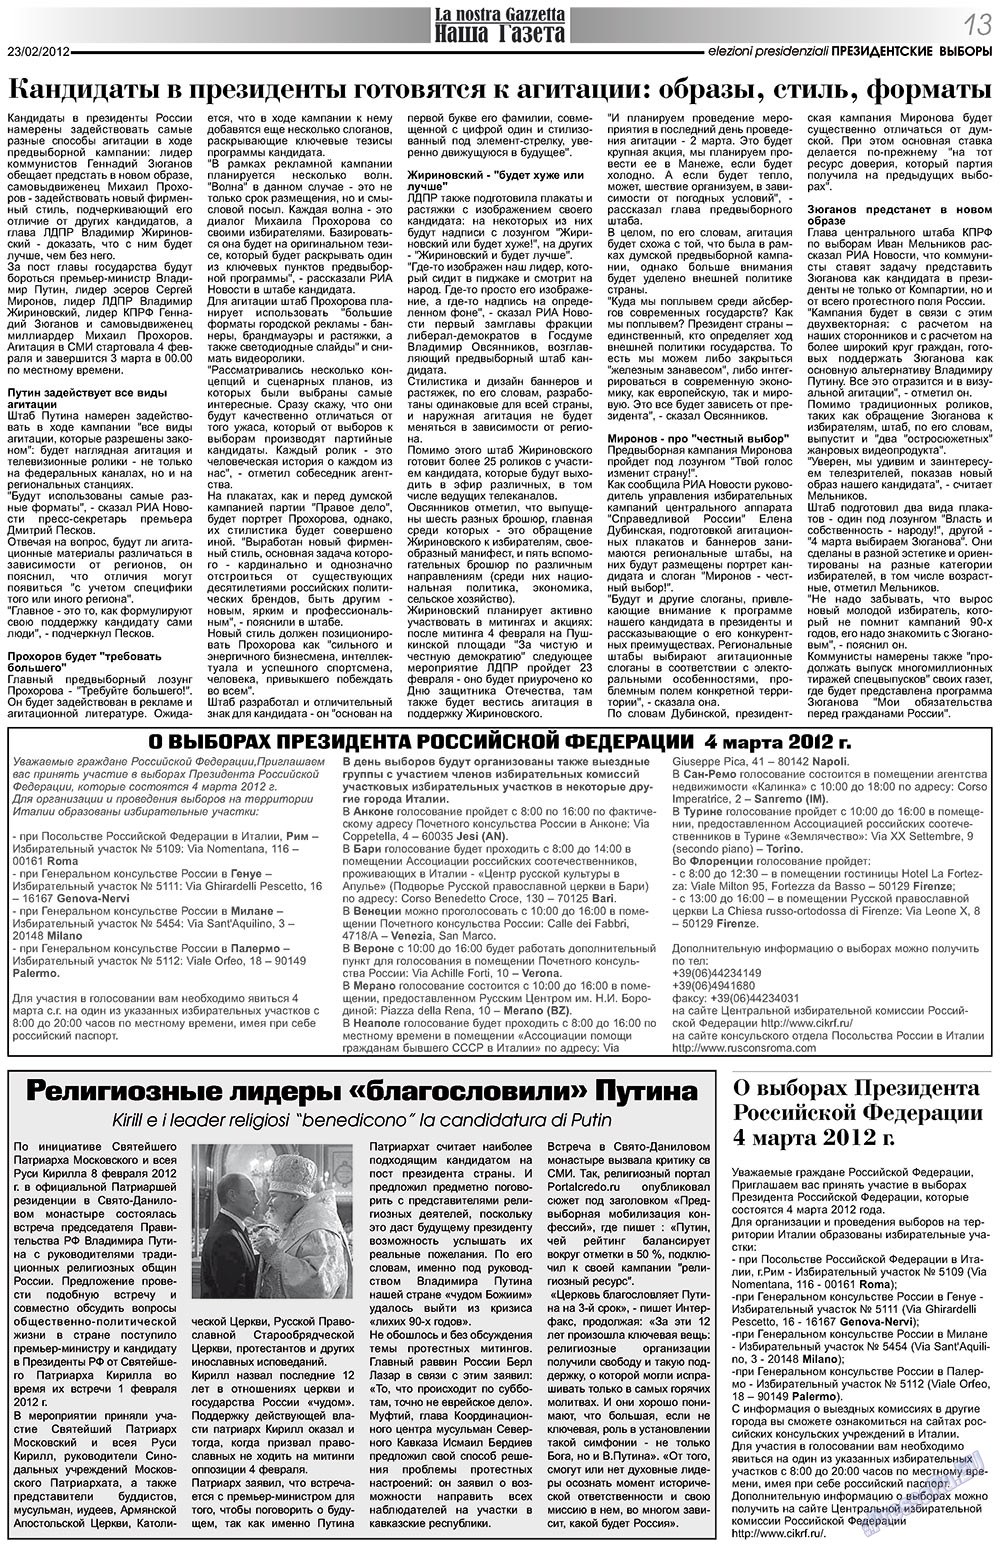 Наша Газета Италия, газета. 2012 №151 стр.13